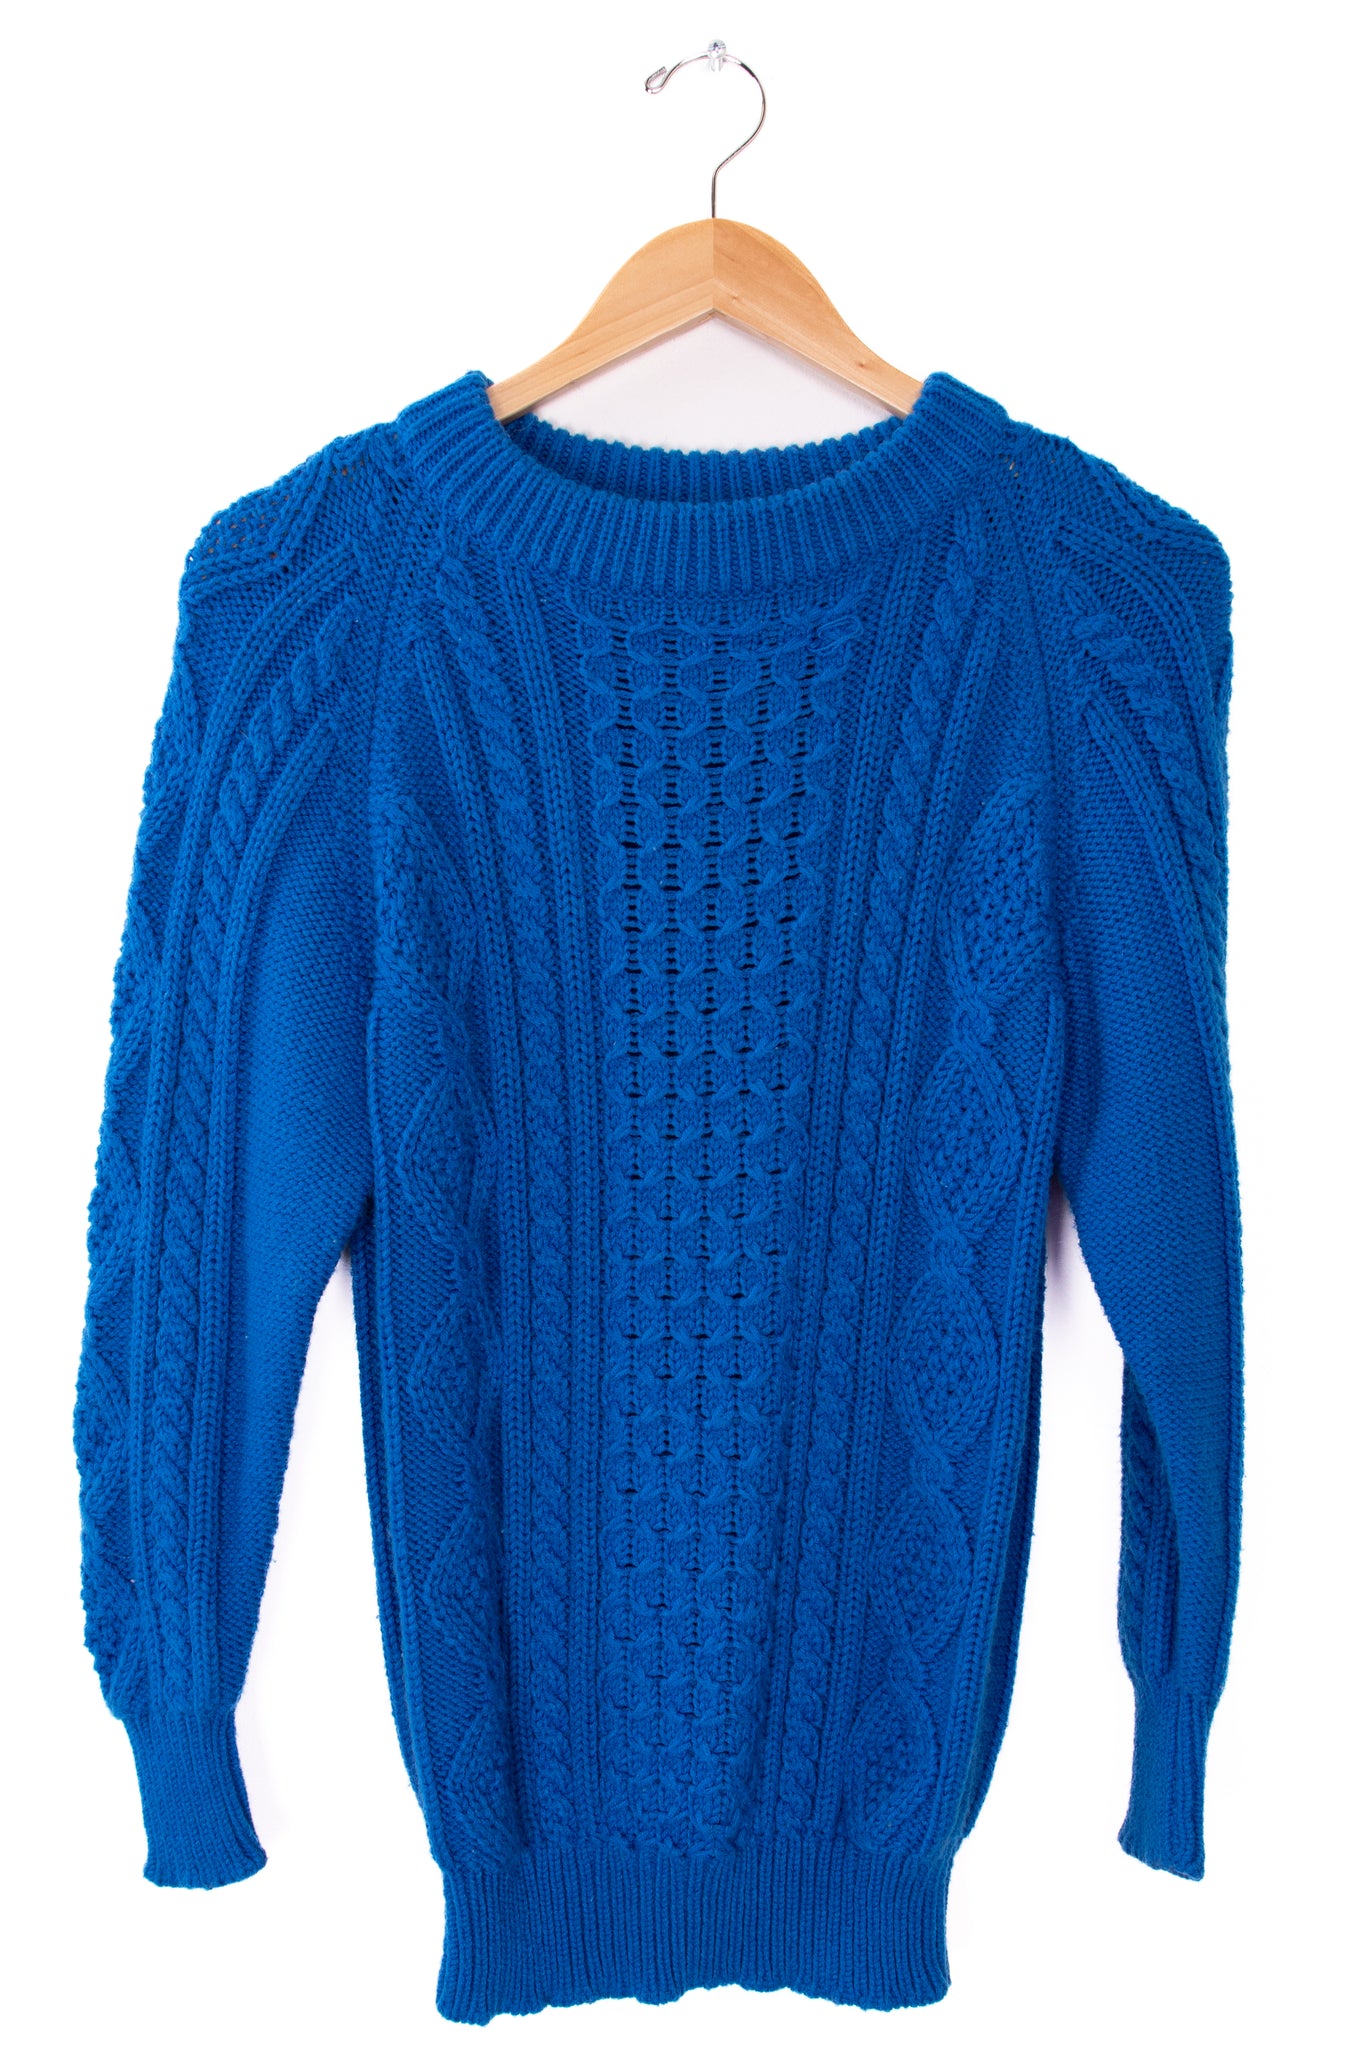 Hunters Glen Blue Knit Sweater